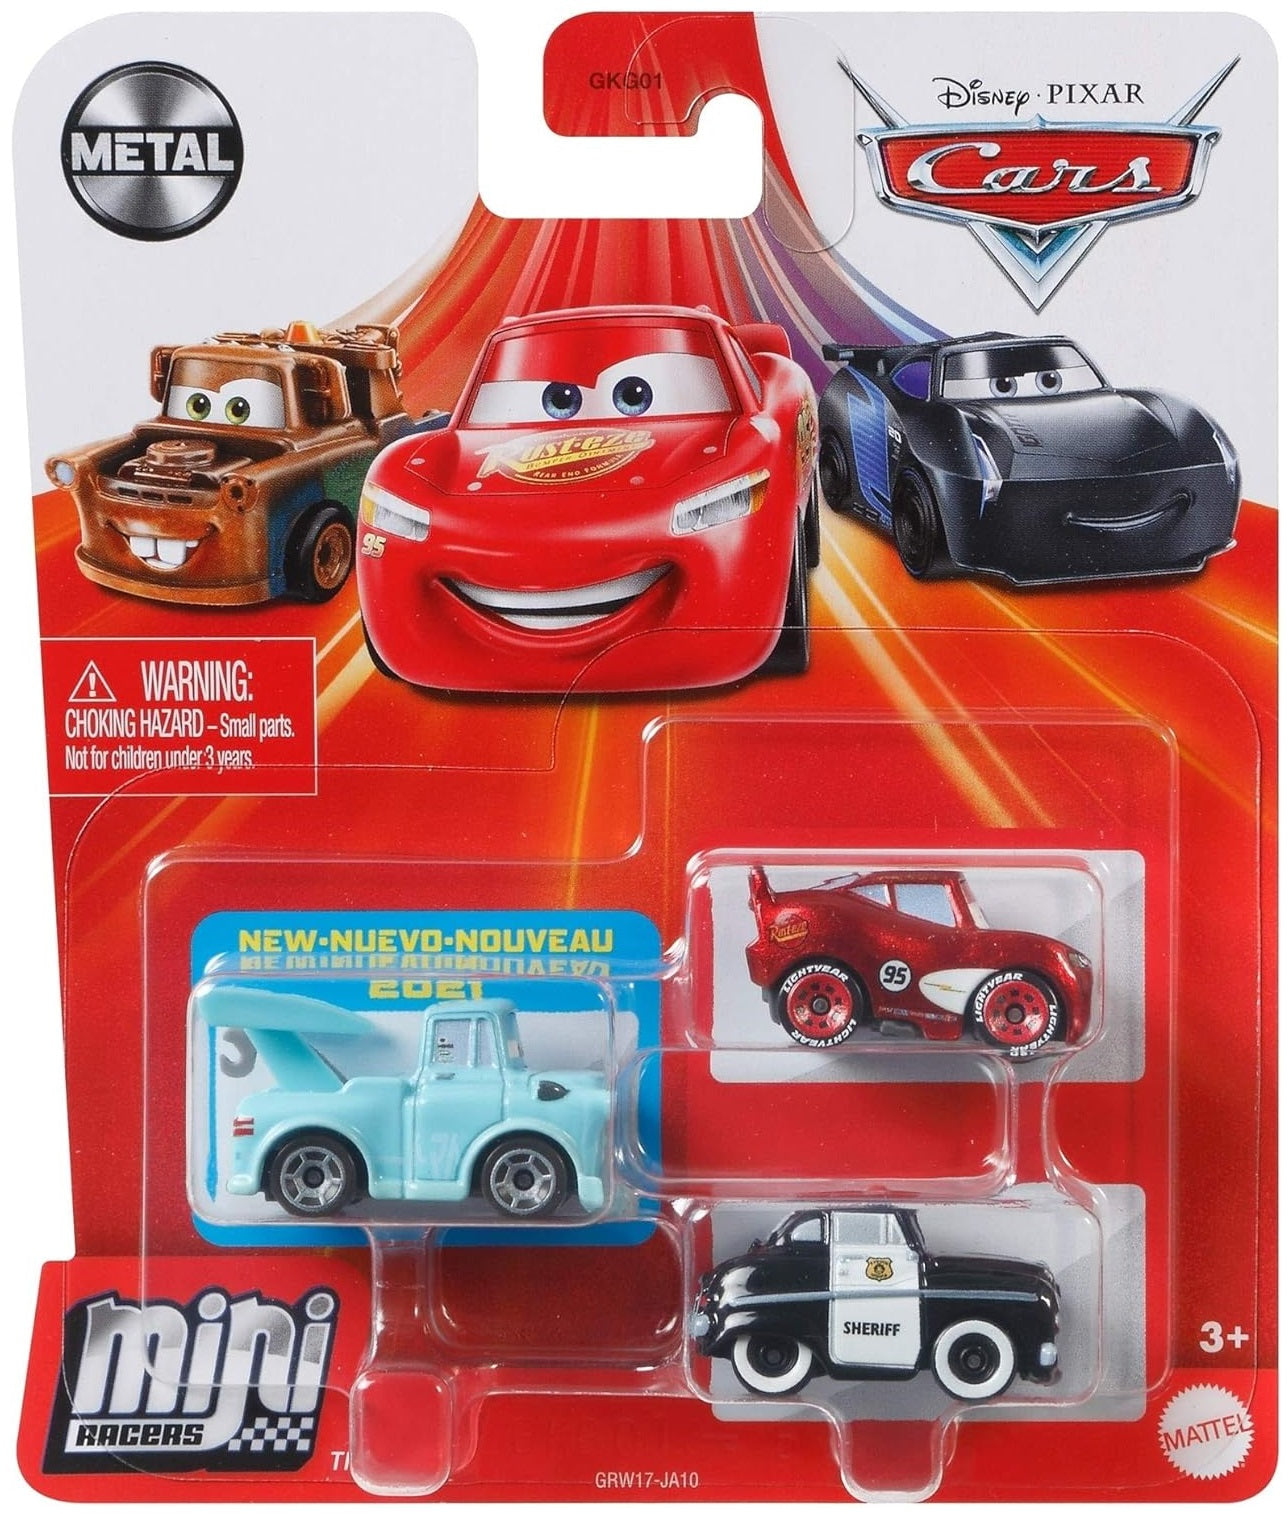 Disney Cars Mini Racers - Tokyo Mater / Sheriff / Radiator Springs Lightning McQueen